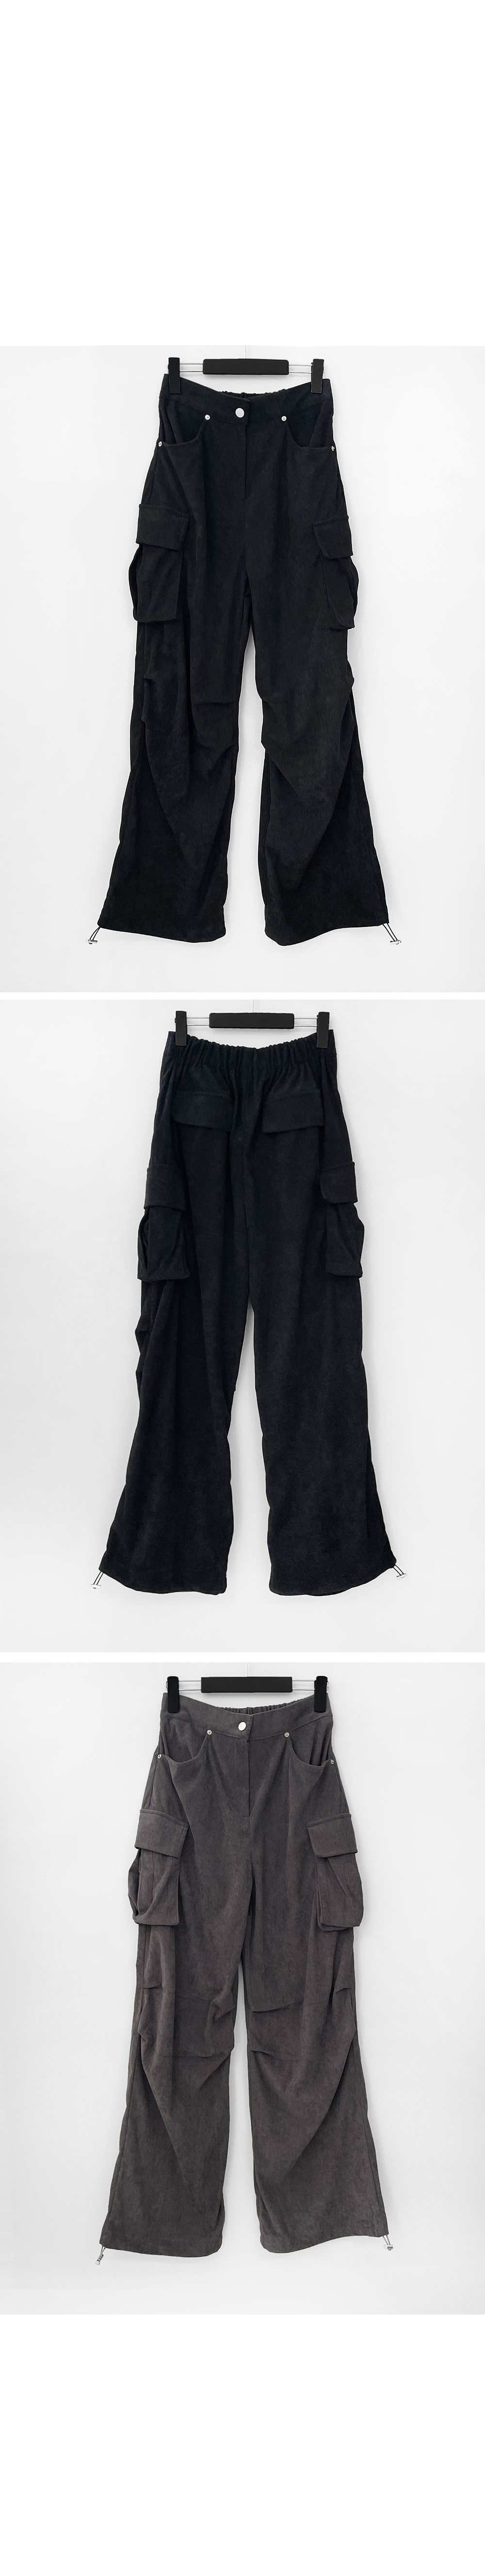 Pants charcoal color image-S1L8